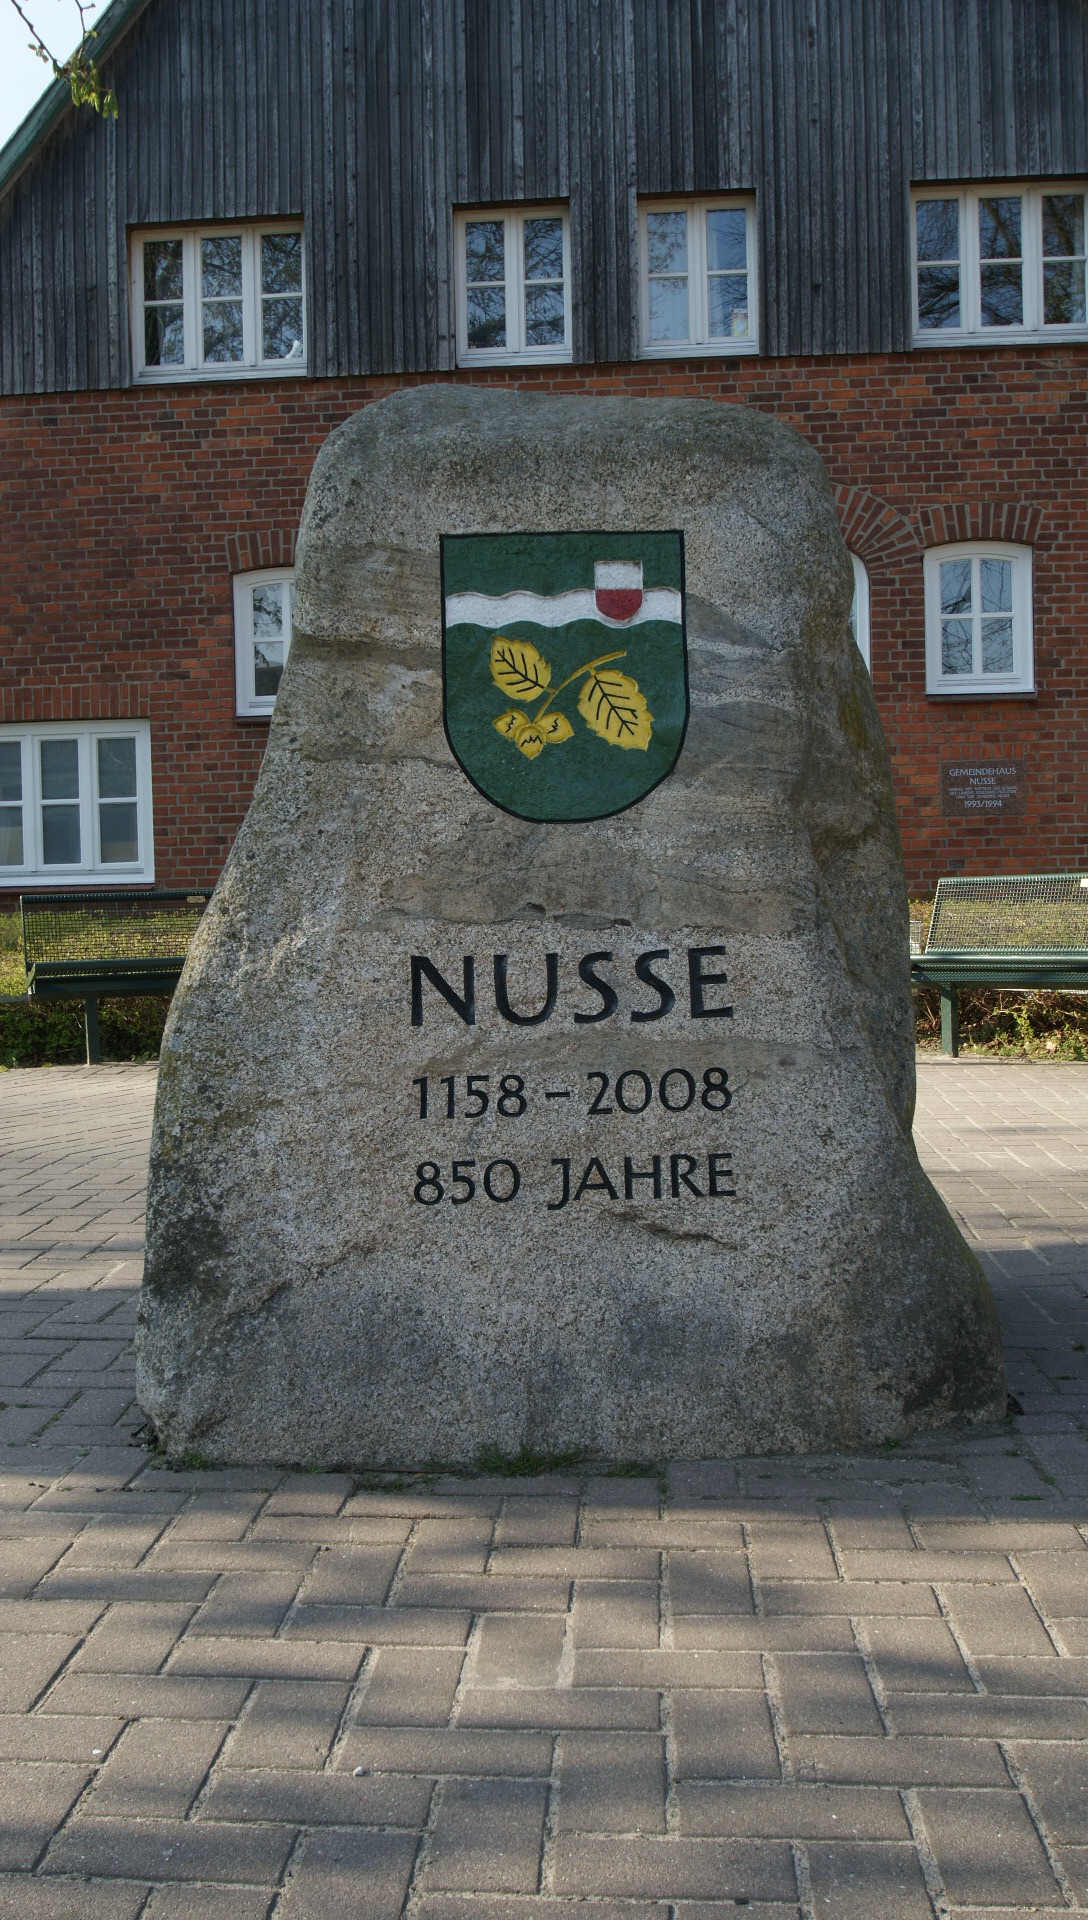 Ferienhaus Nusse - Nusse 850 Jahre